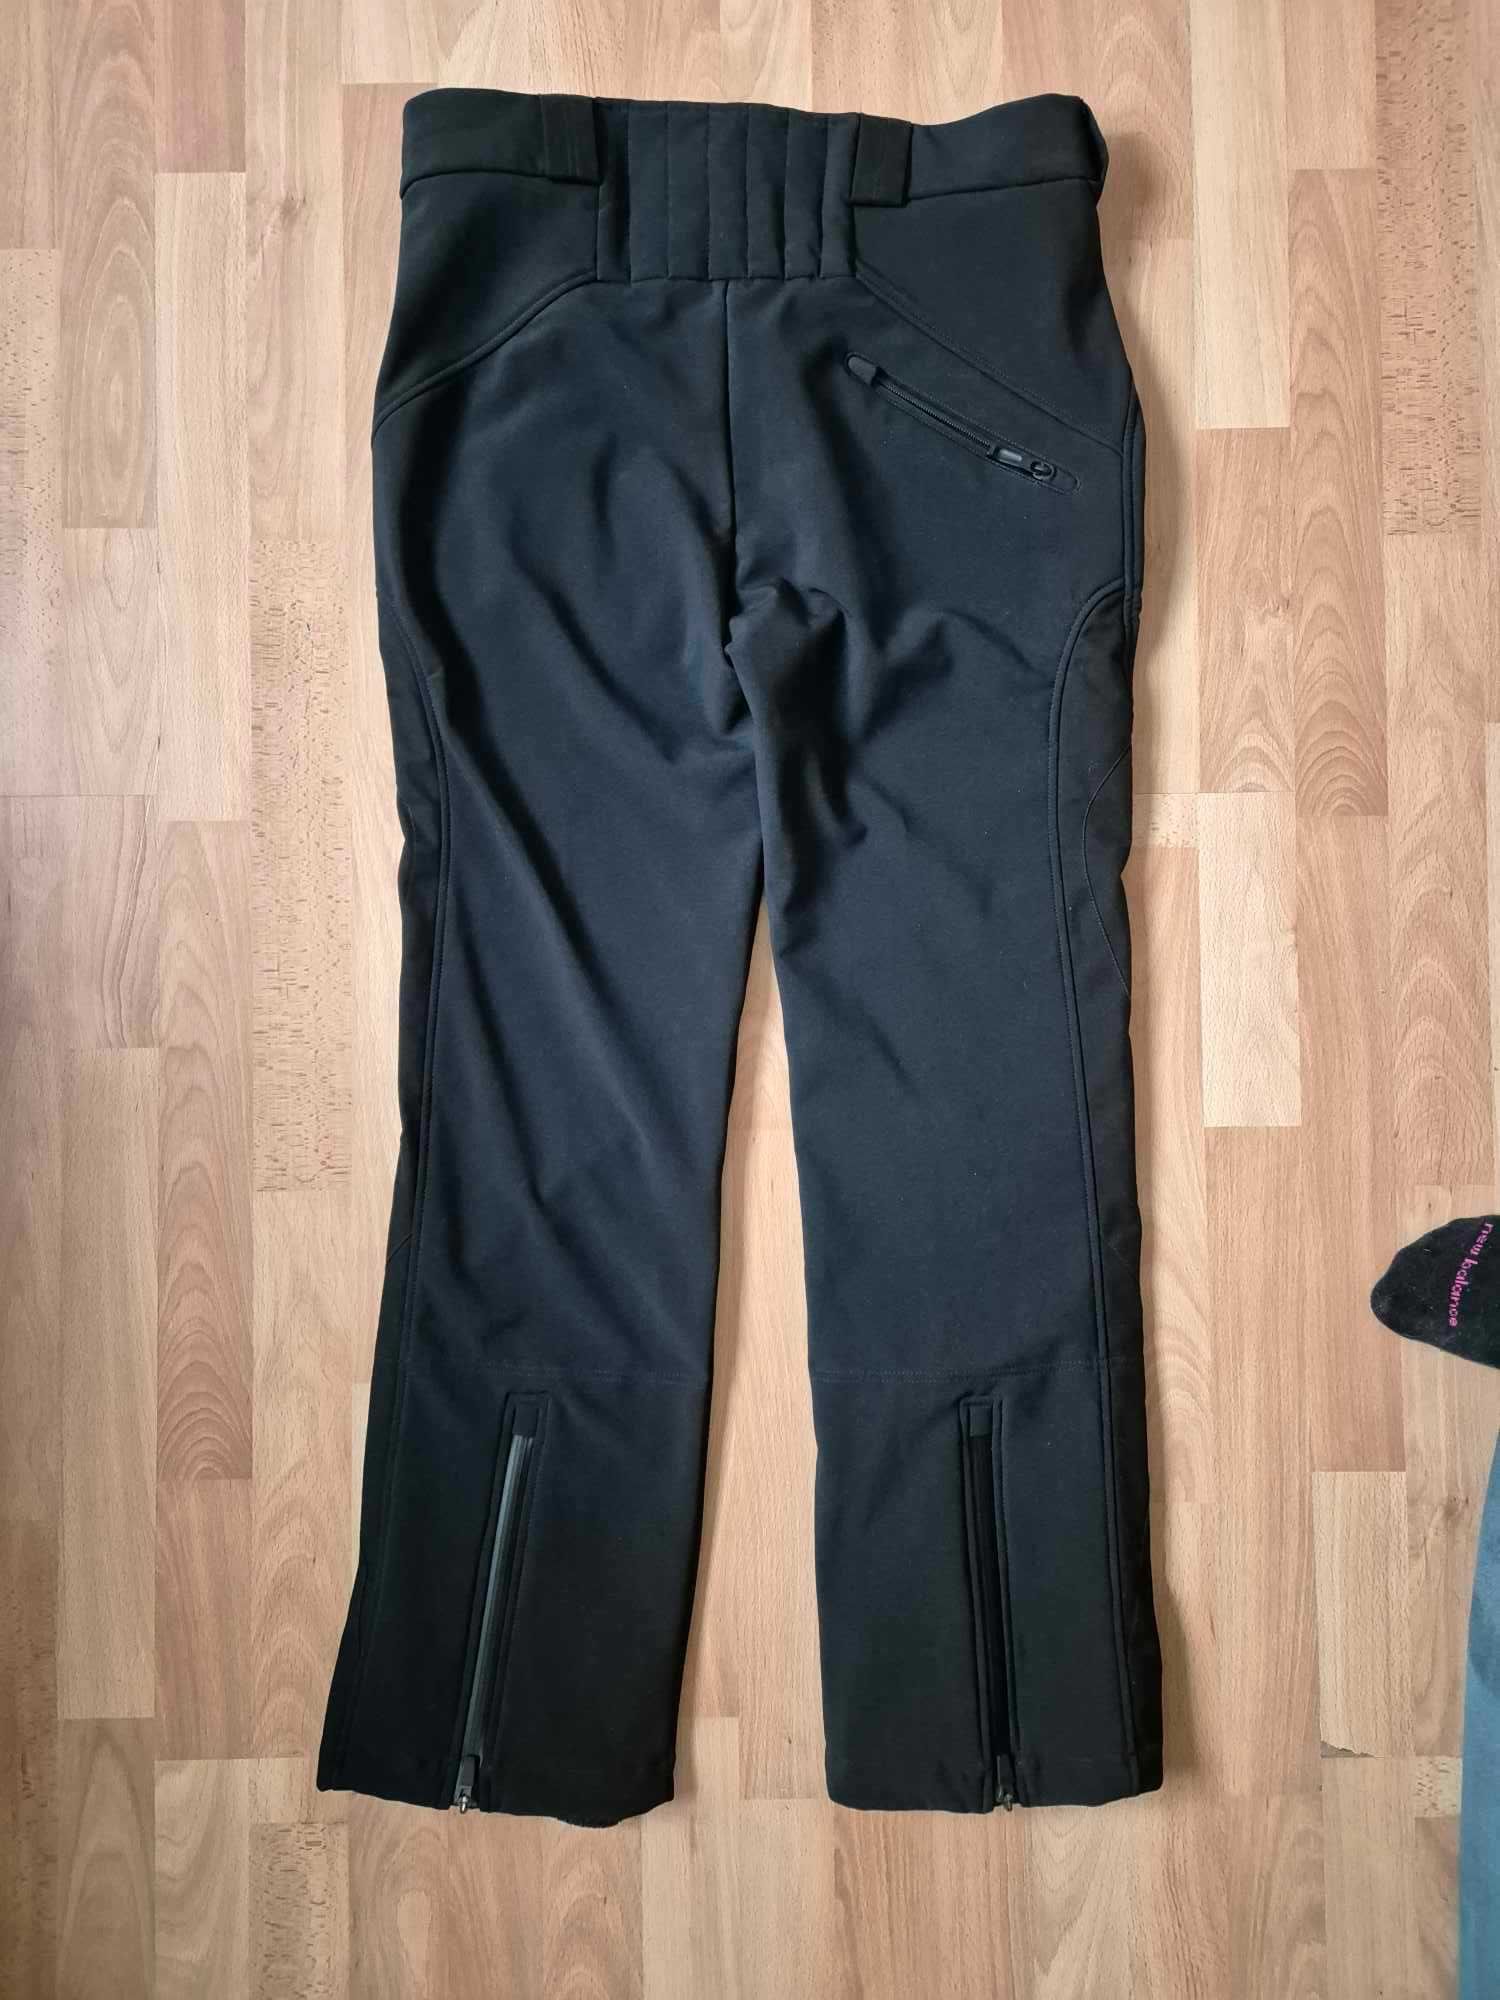 Spodnie narciarskie meskie Vist LUCIO PANT XL 52 czarne